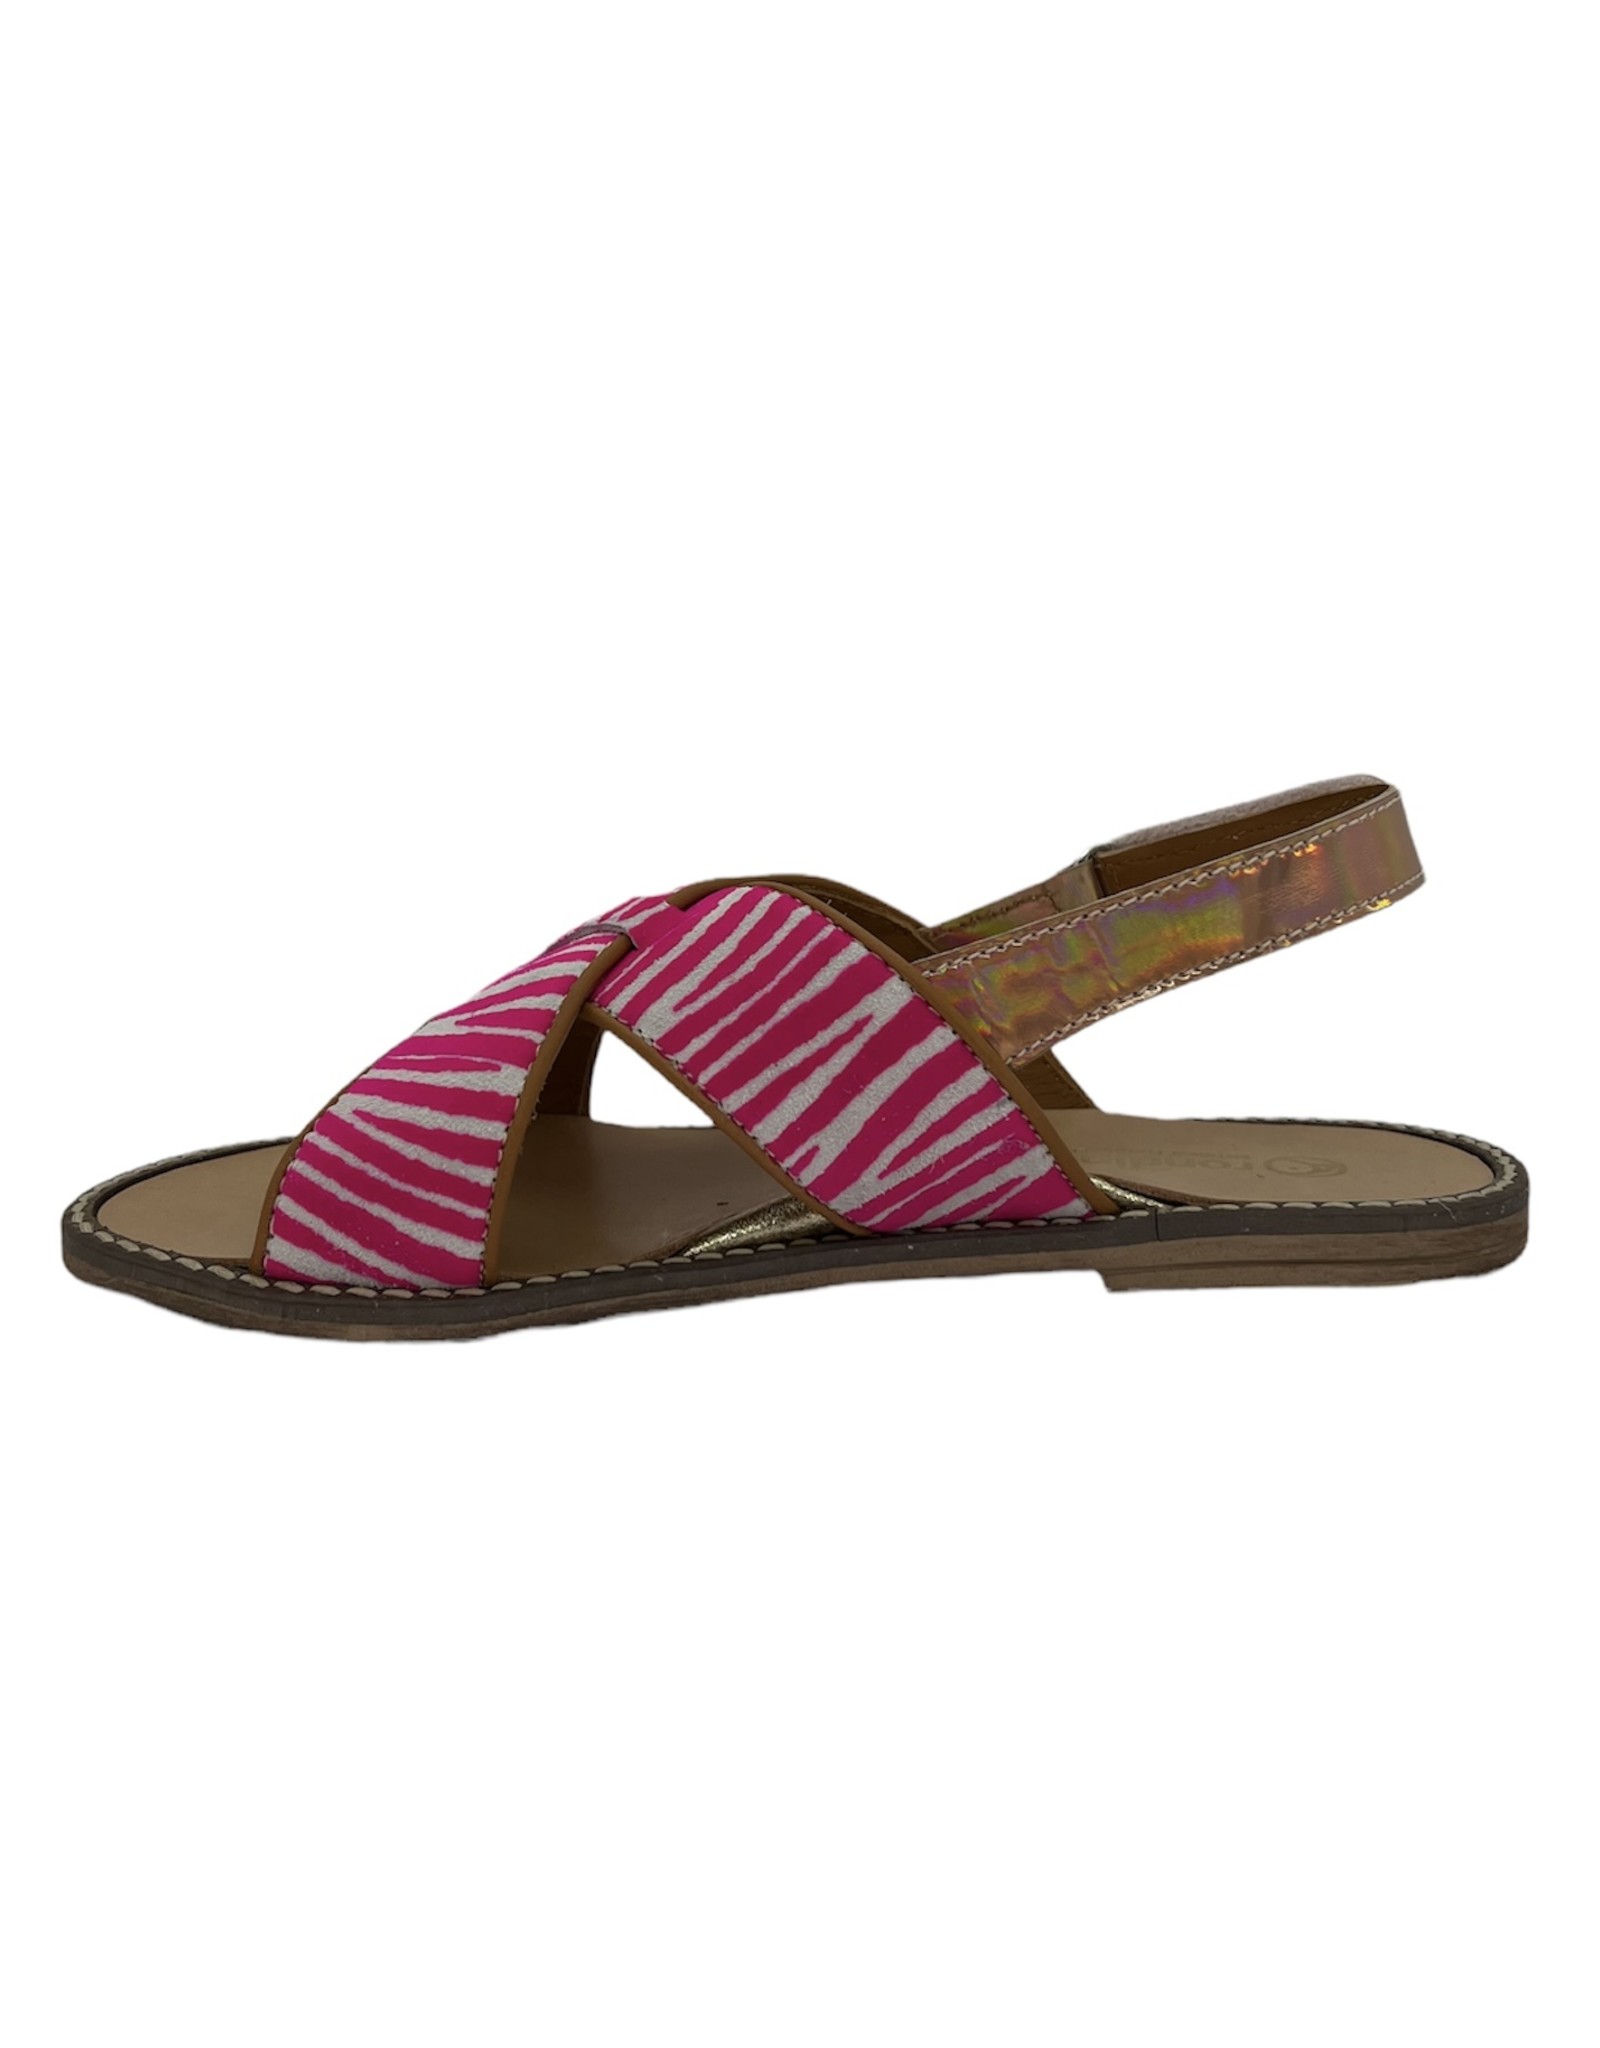 Rondinella 01006-1 sandaal wit roze gestreept